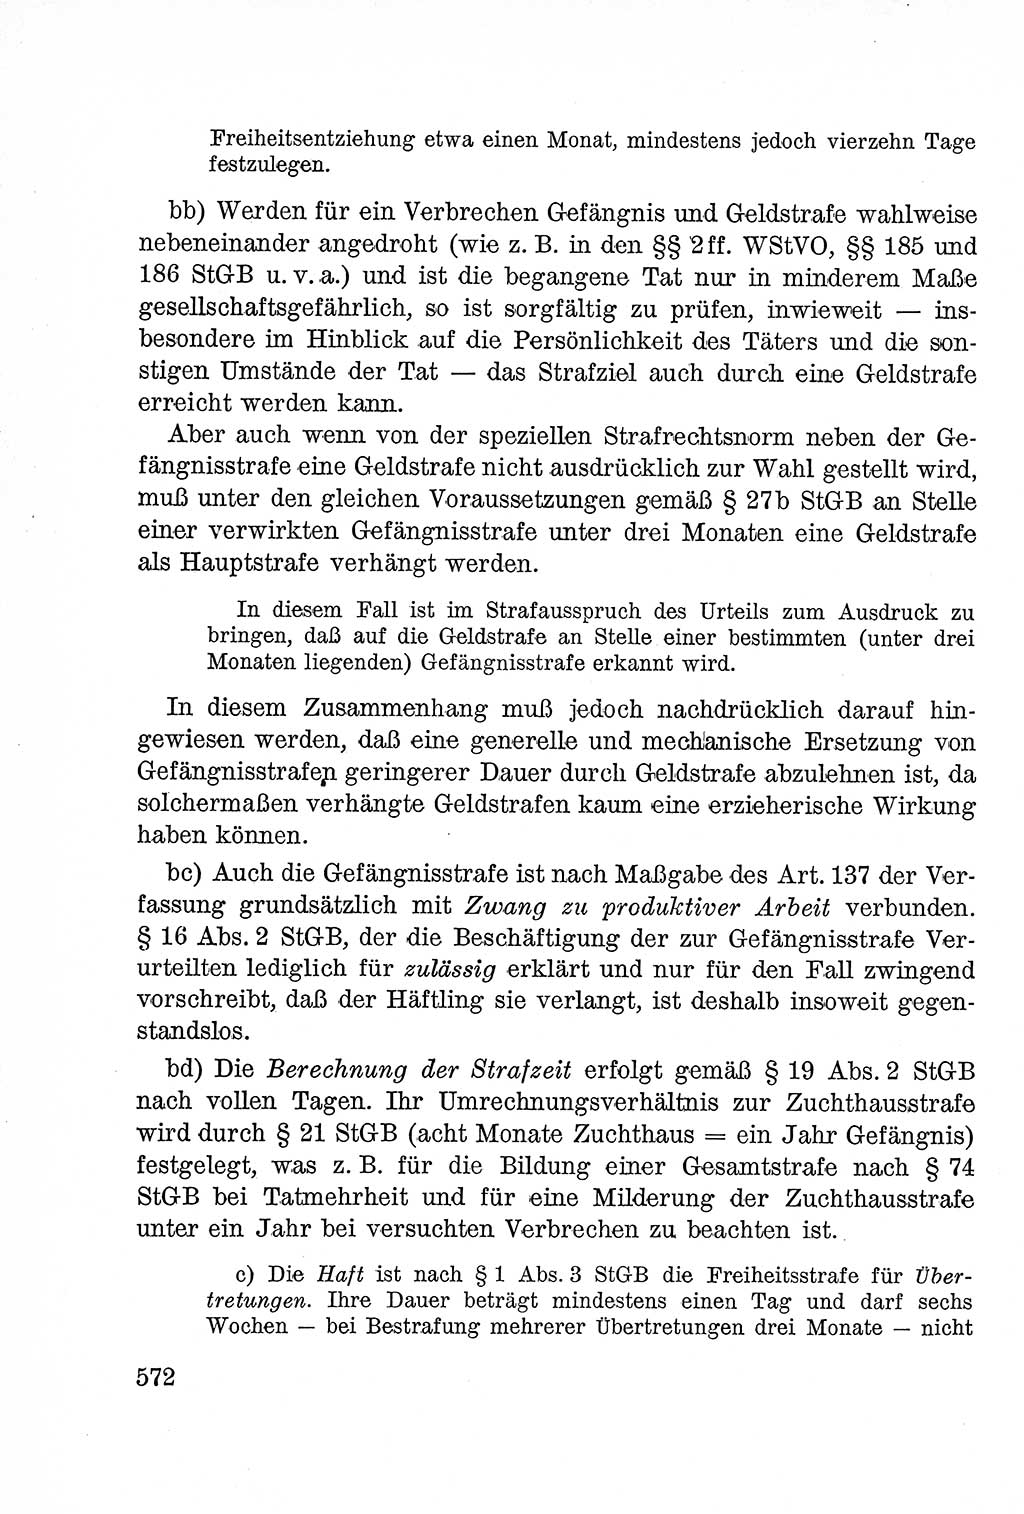 Lehrbuch des Strafrechts der Deutschen Demokratischen Republik (DDR), Allgemeiner Teil 1957, Seite 572 (Lb. Strafr. DDR AT 1957, S. 572)